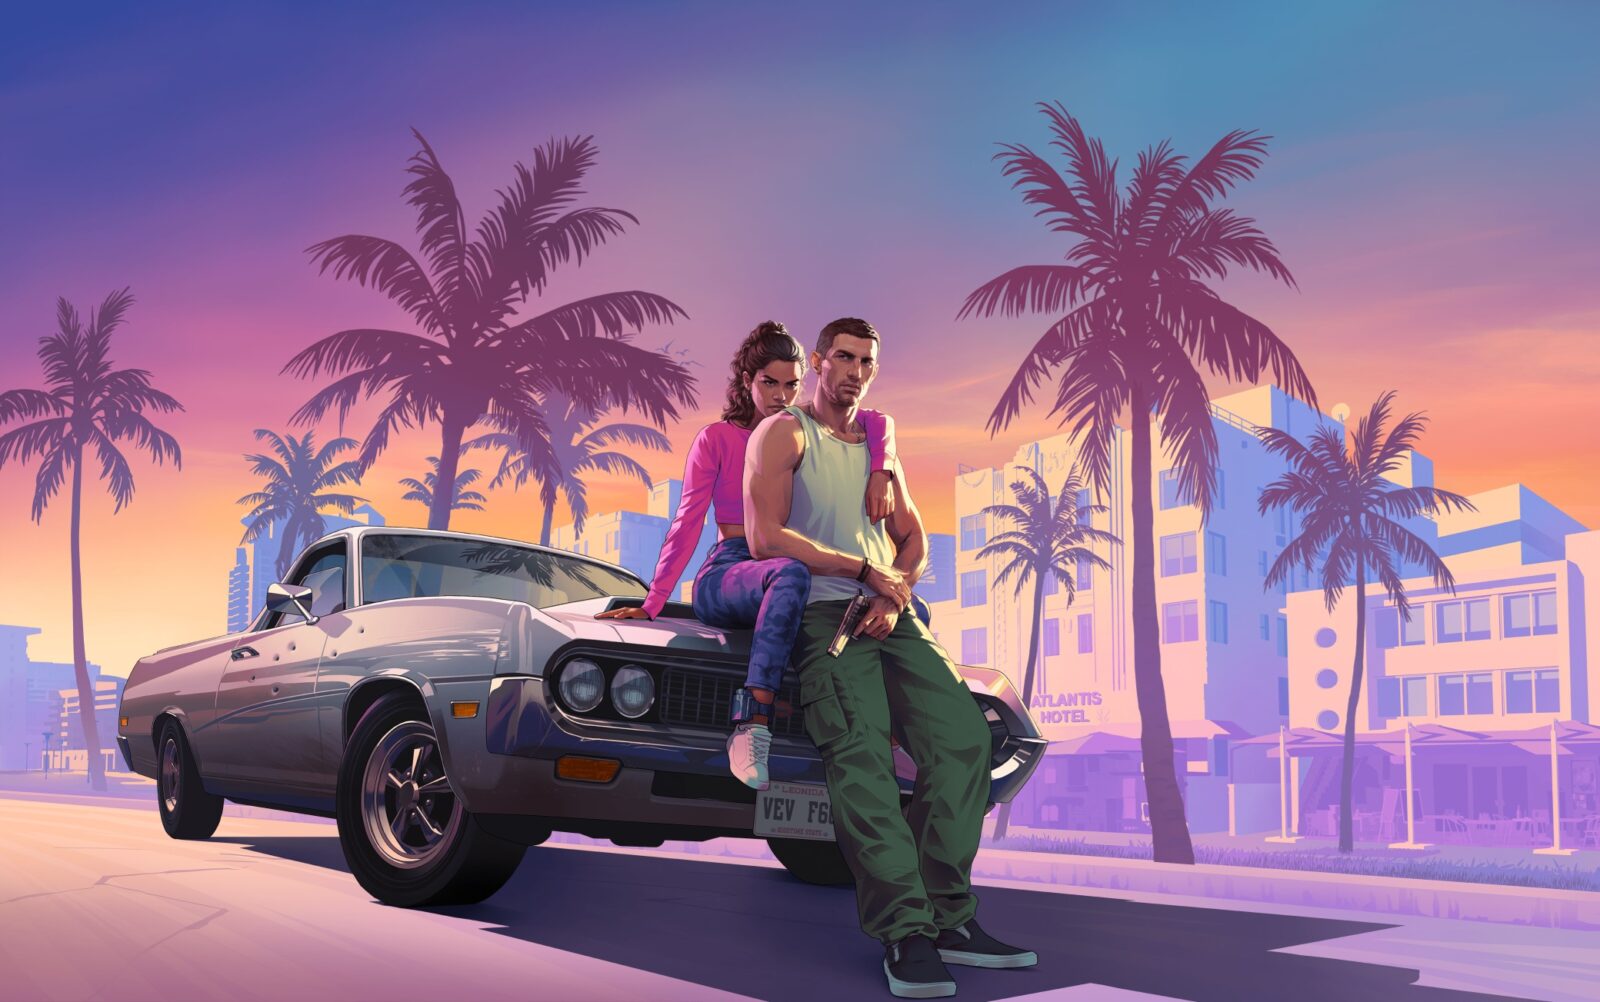 Grand Theft Auto VI Take-Two Interactive